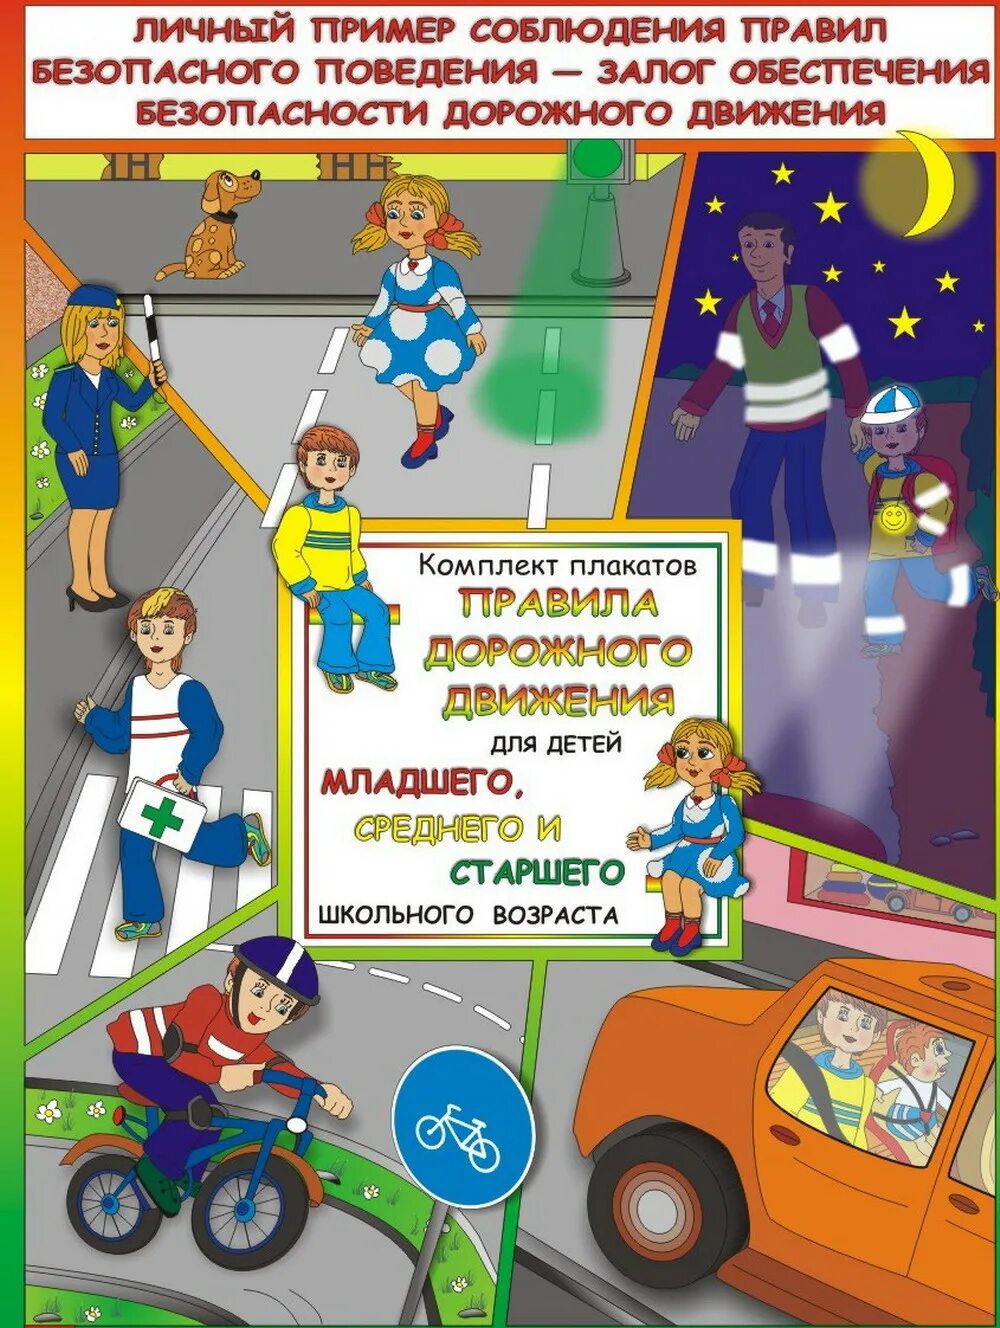 Дорожное движение для детей. Плакаты по безопасности дорожного движения для детей. Правила дорожного движения для детей. Плакат по правилам дорожного движения.